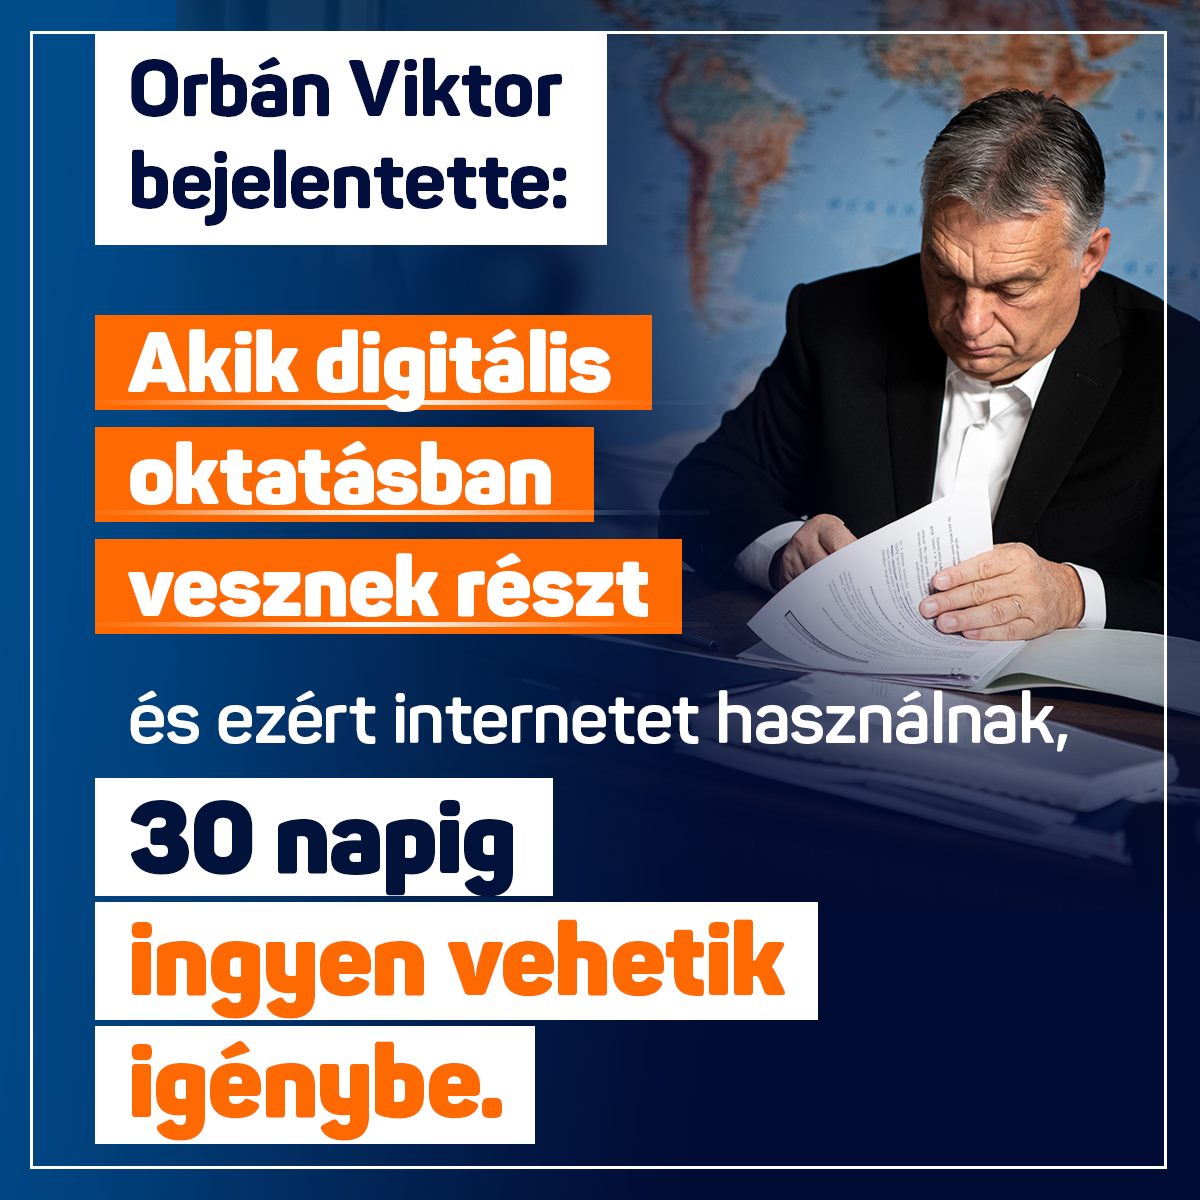 Orbán Viktor – Akik digitális oktatásban vesznek részt és ezért internetet használnak, 30 napi ingyen vehetik igénybe.